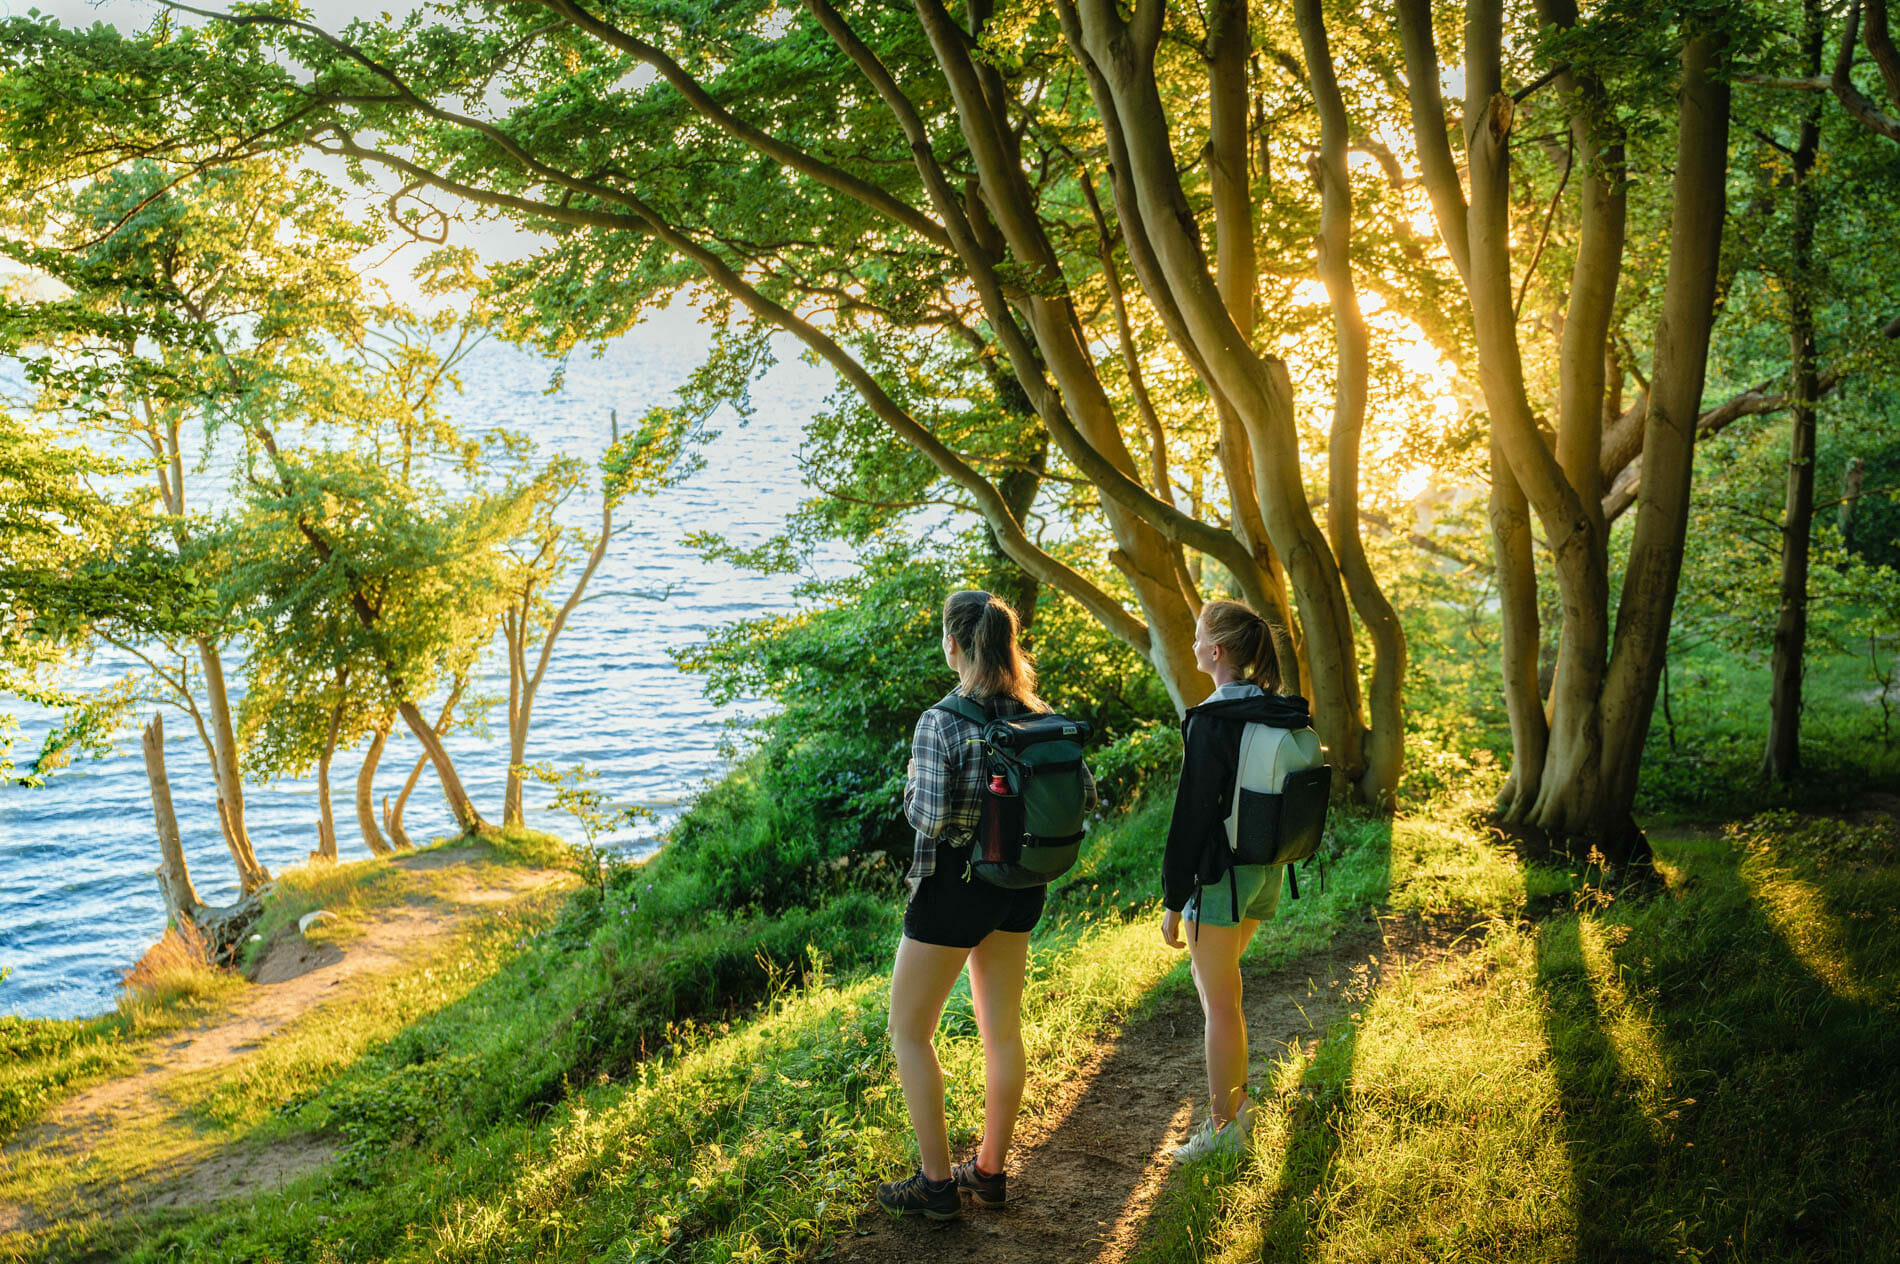 Tourismusfotos von einer Wandertour rund um die Insel Rügen mit zwei jungen Frauen. Die beiden stehen im Wald am Hochufer und schauen in Richtung Meer.